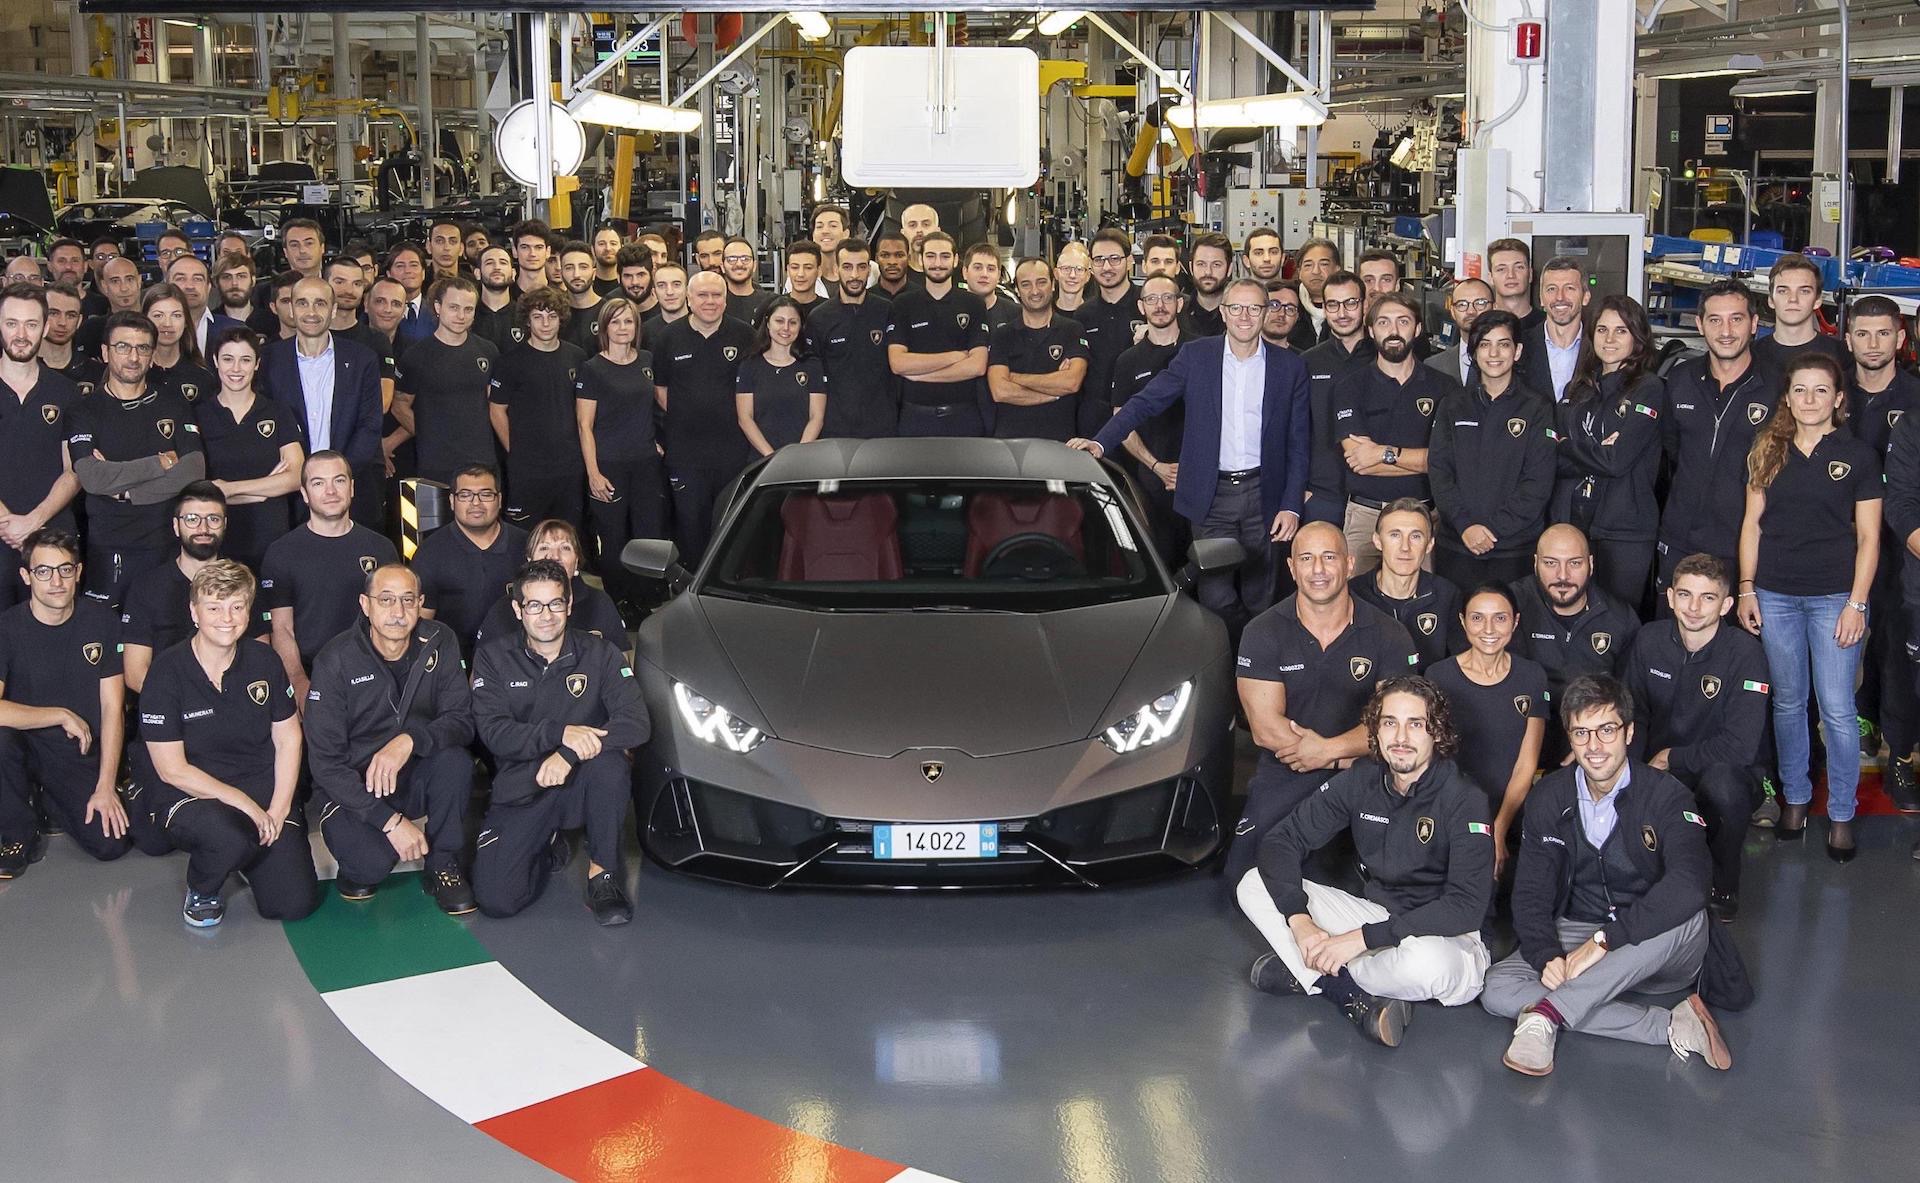 Lamborghini Huracan production hits 14,022, passes Gallardo